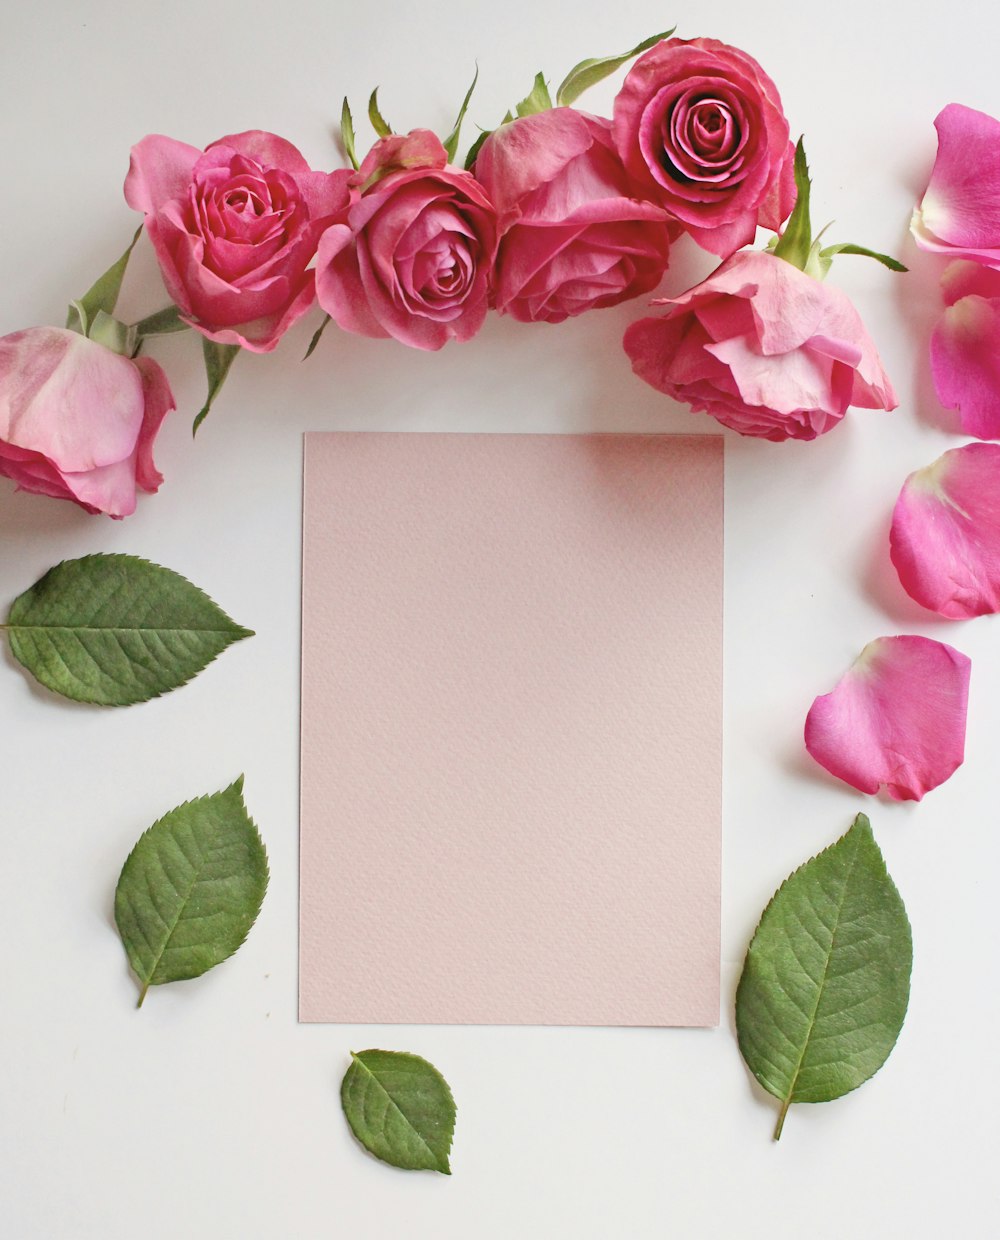 rosa Rosen neben weißem Papier